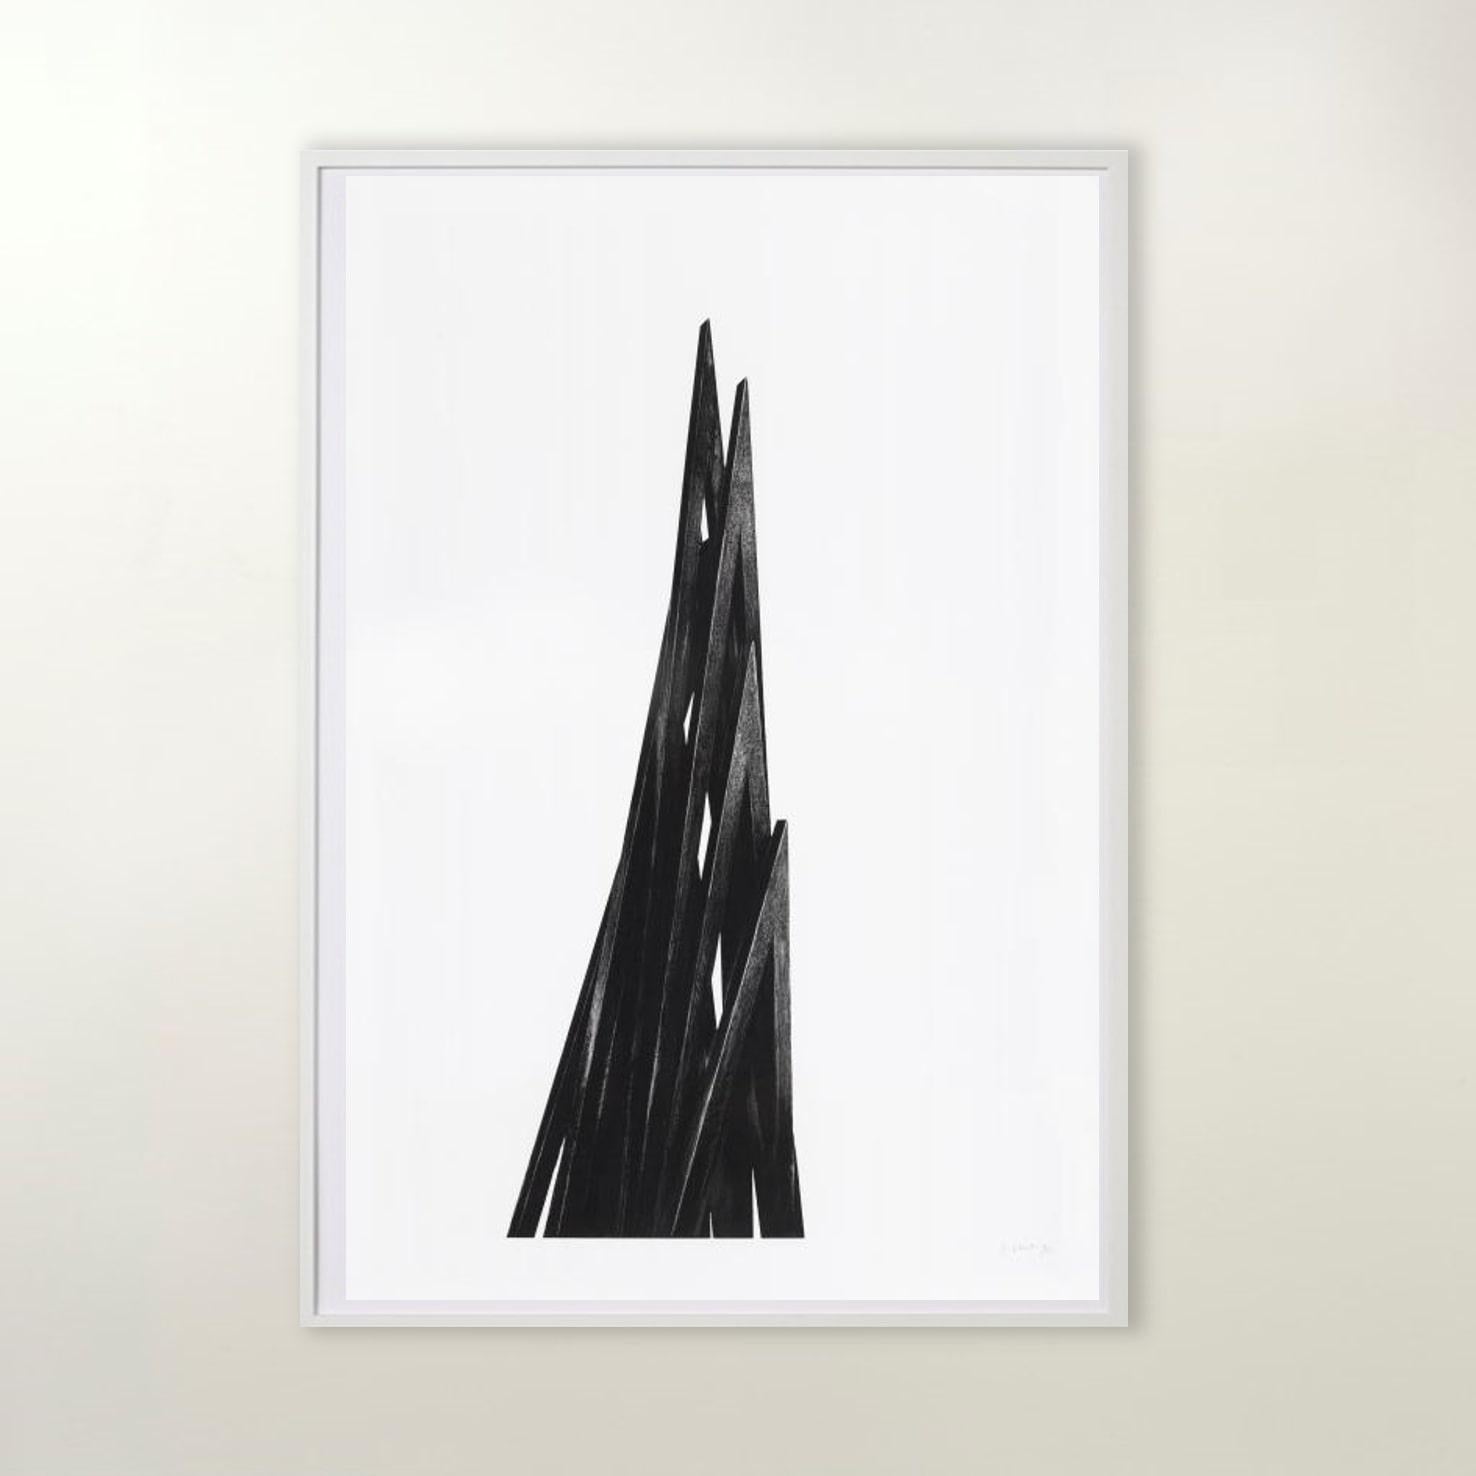 Arcs : Uneven Angles - Contemporain, 21e siècle, gravure, noir, blanc, édition - Gris Figurative Print par Bernar Venet